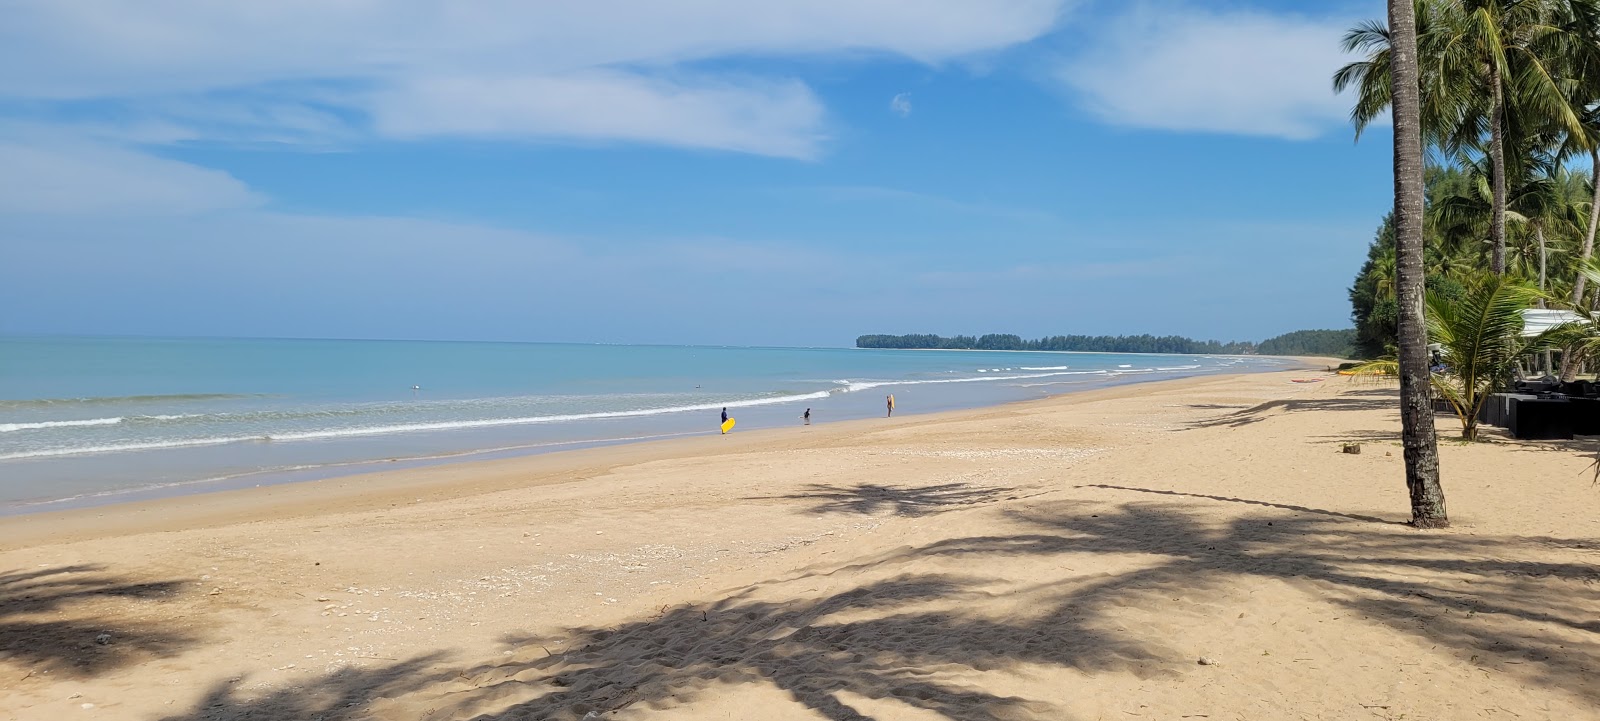 Foto af Khuk Khak Beach - populært sted blandt afslapningskendere